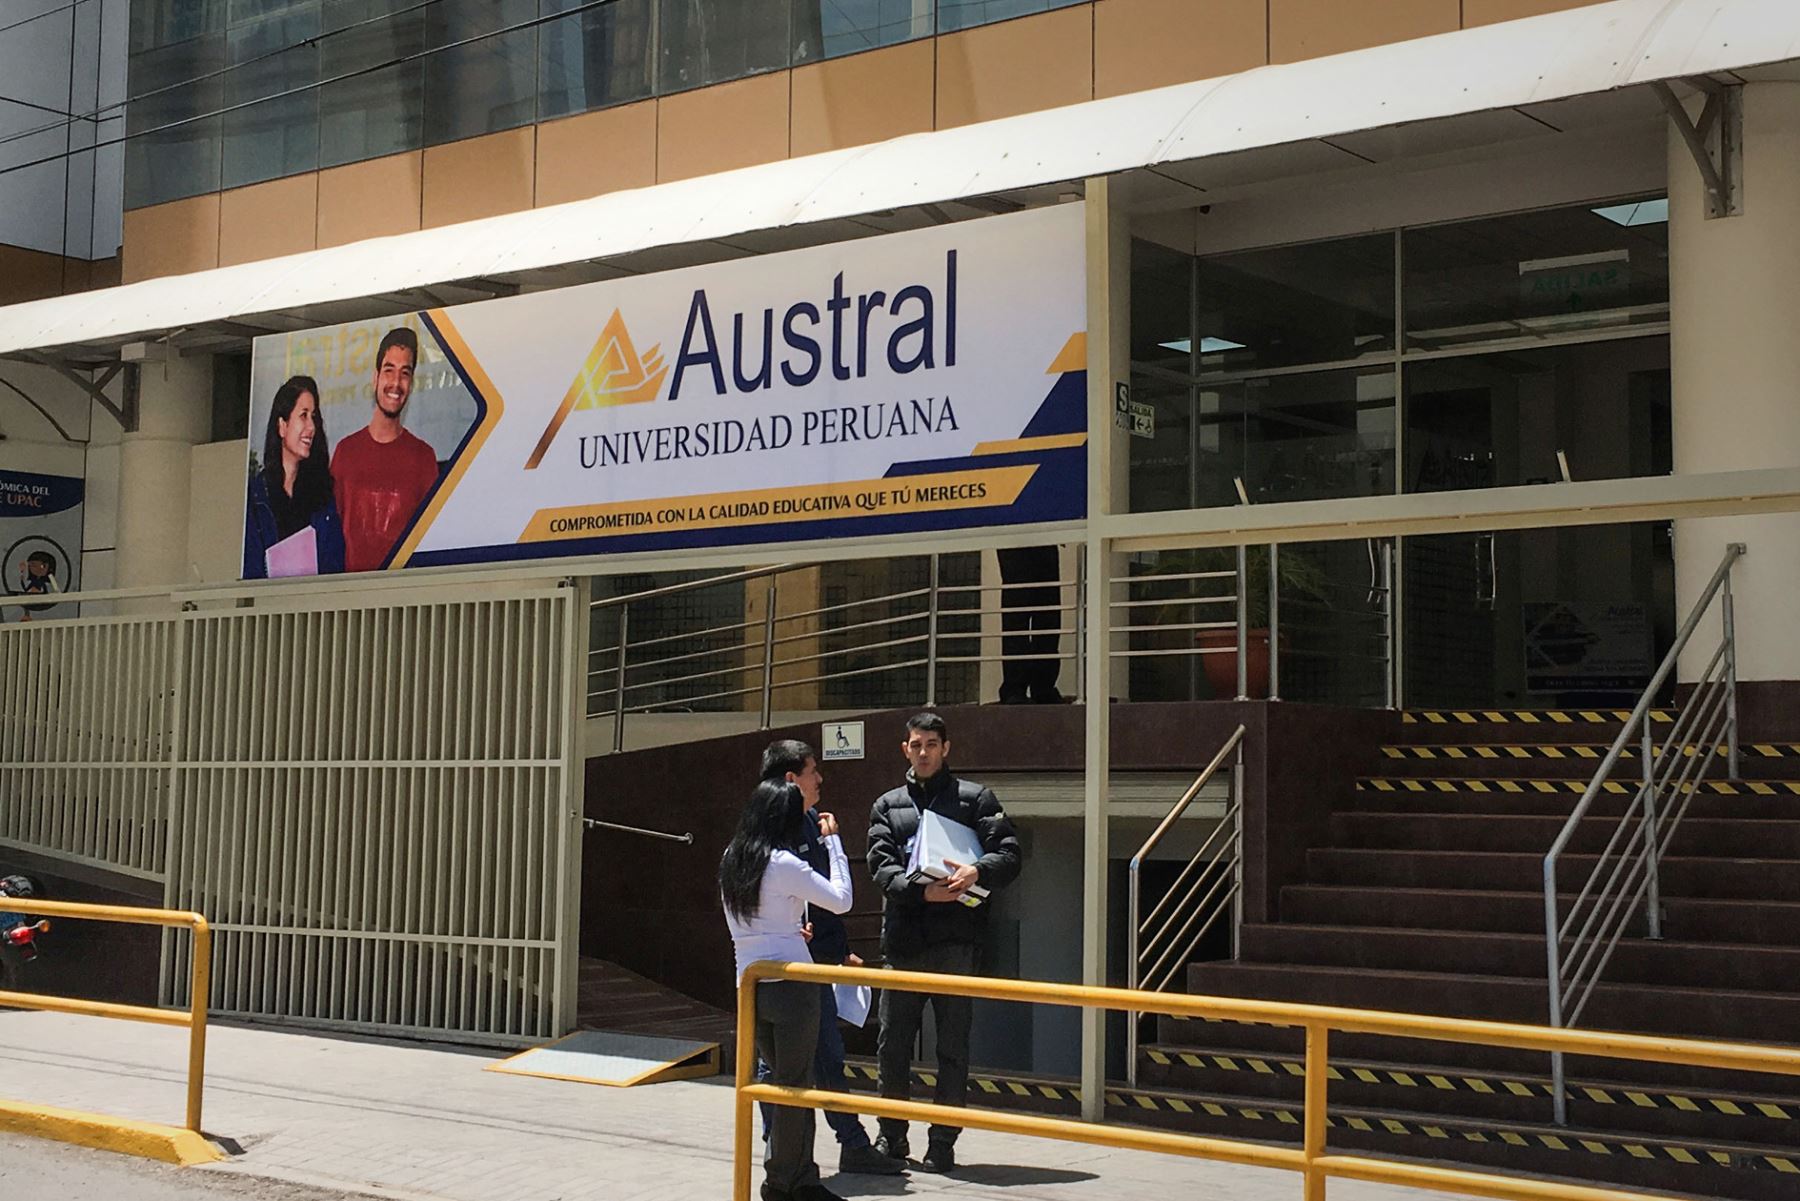 La Universidad Peruana Austral del Cusco (UAustral) deberá cerrar en un plazo máximo de dos años porque la Sunedu denegó la licencia institucional.